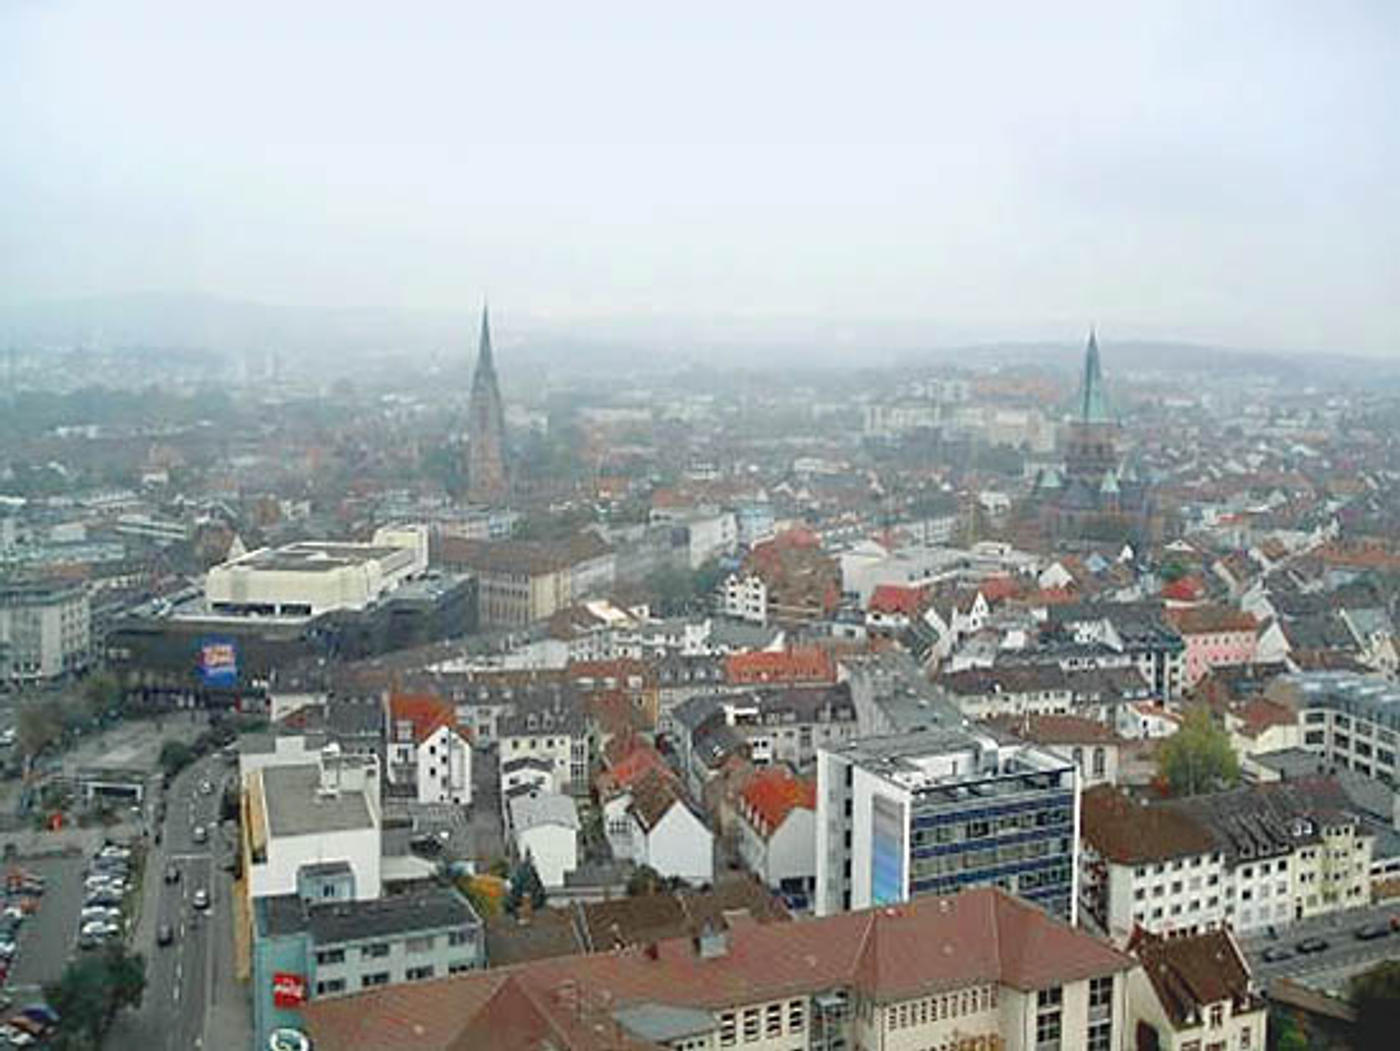 Kaiserslautern: City full of stories